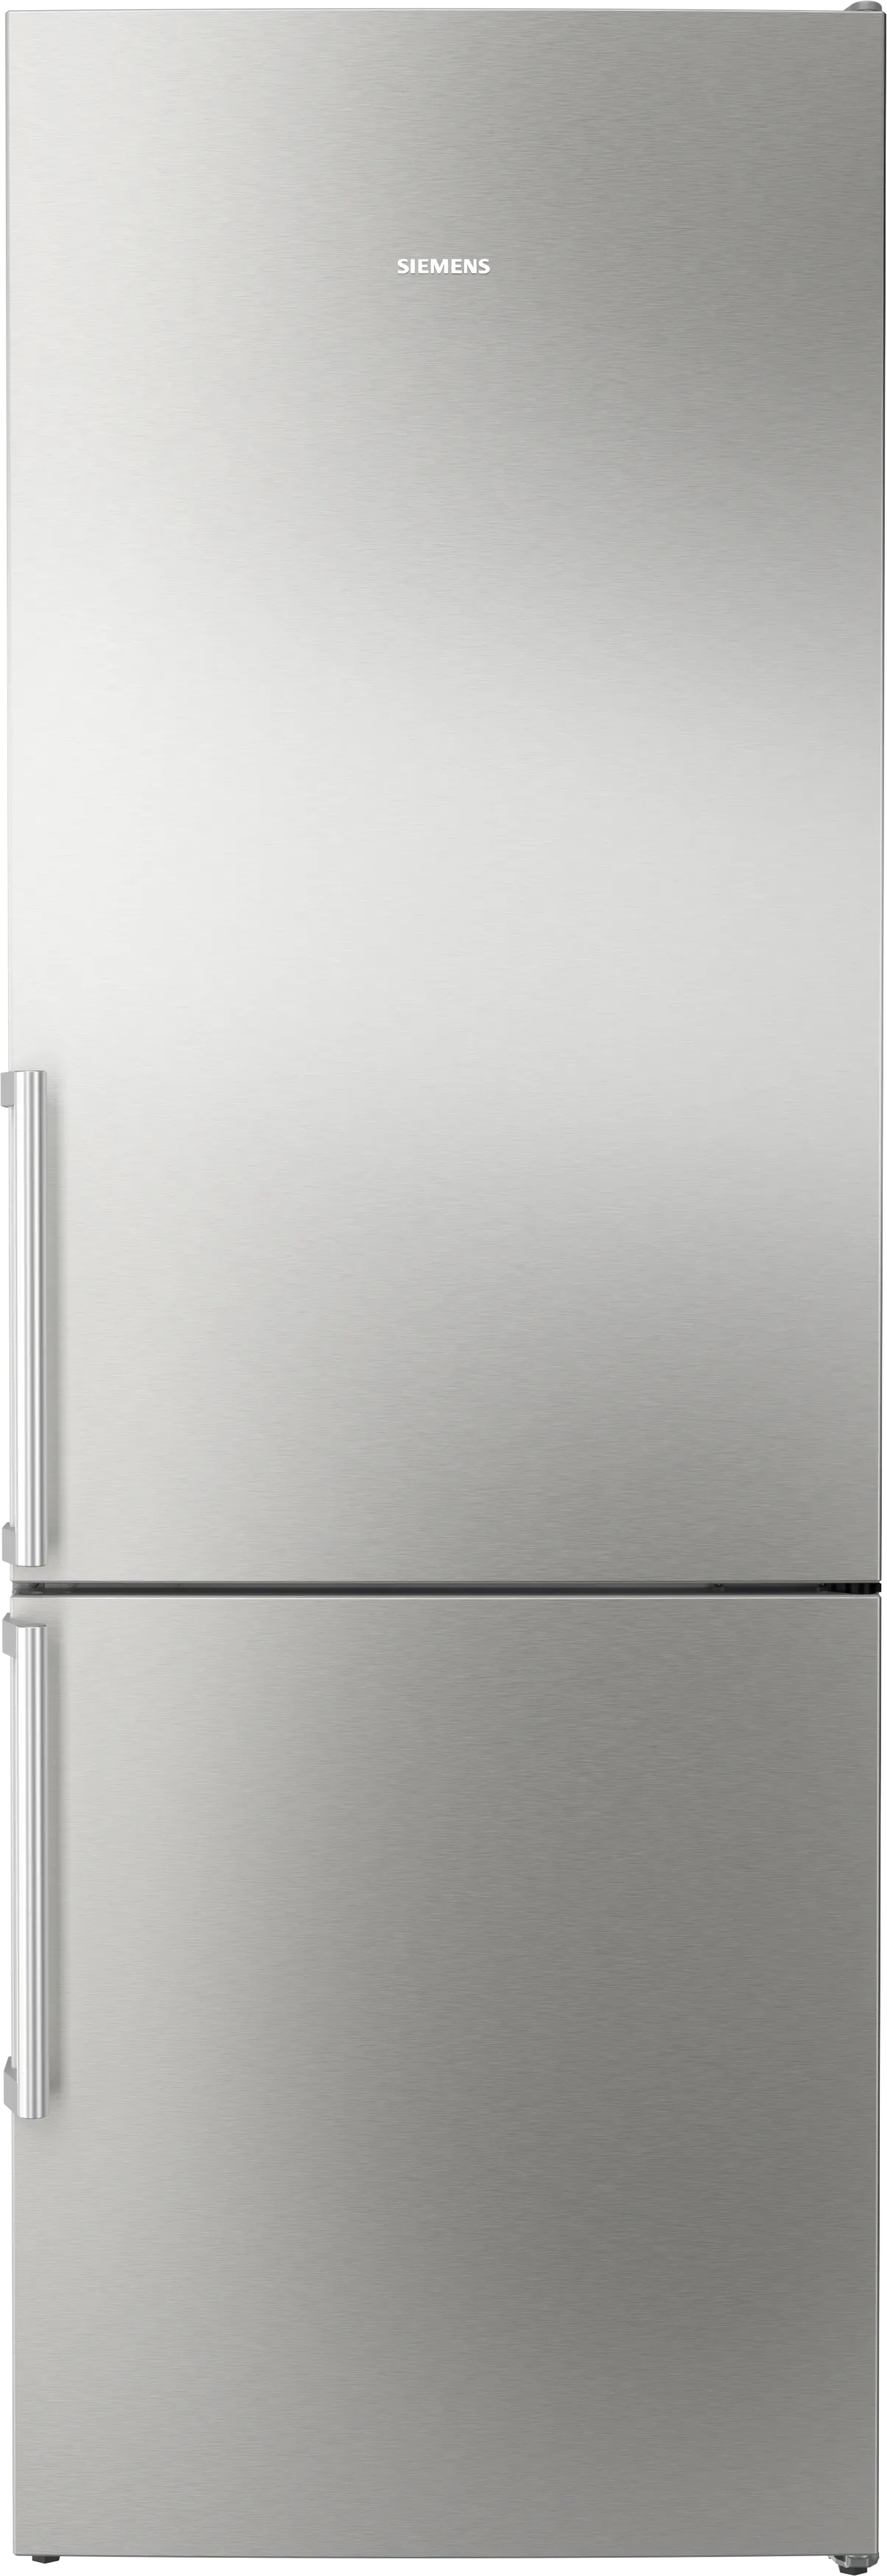 iQ300 Vrijstaande koel-vriescombinatie met bottom-freezer 203 x 70 cm Geborsteld staal antiFingerprint 